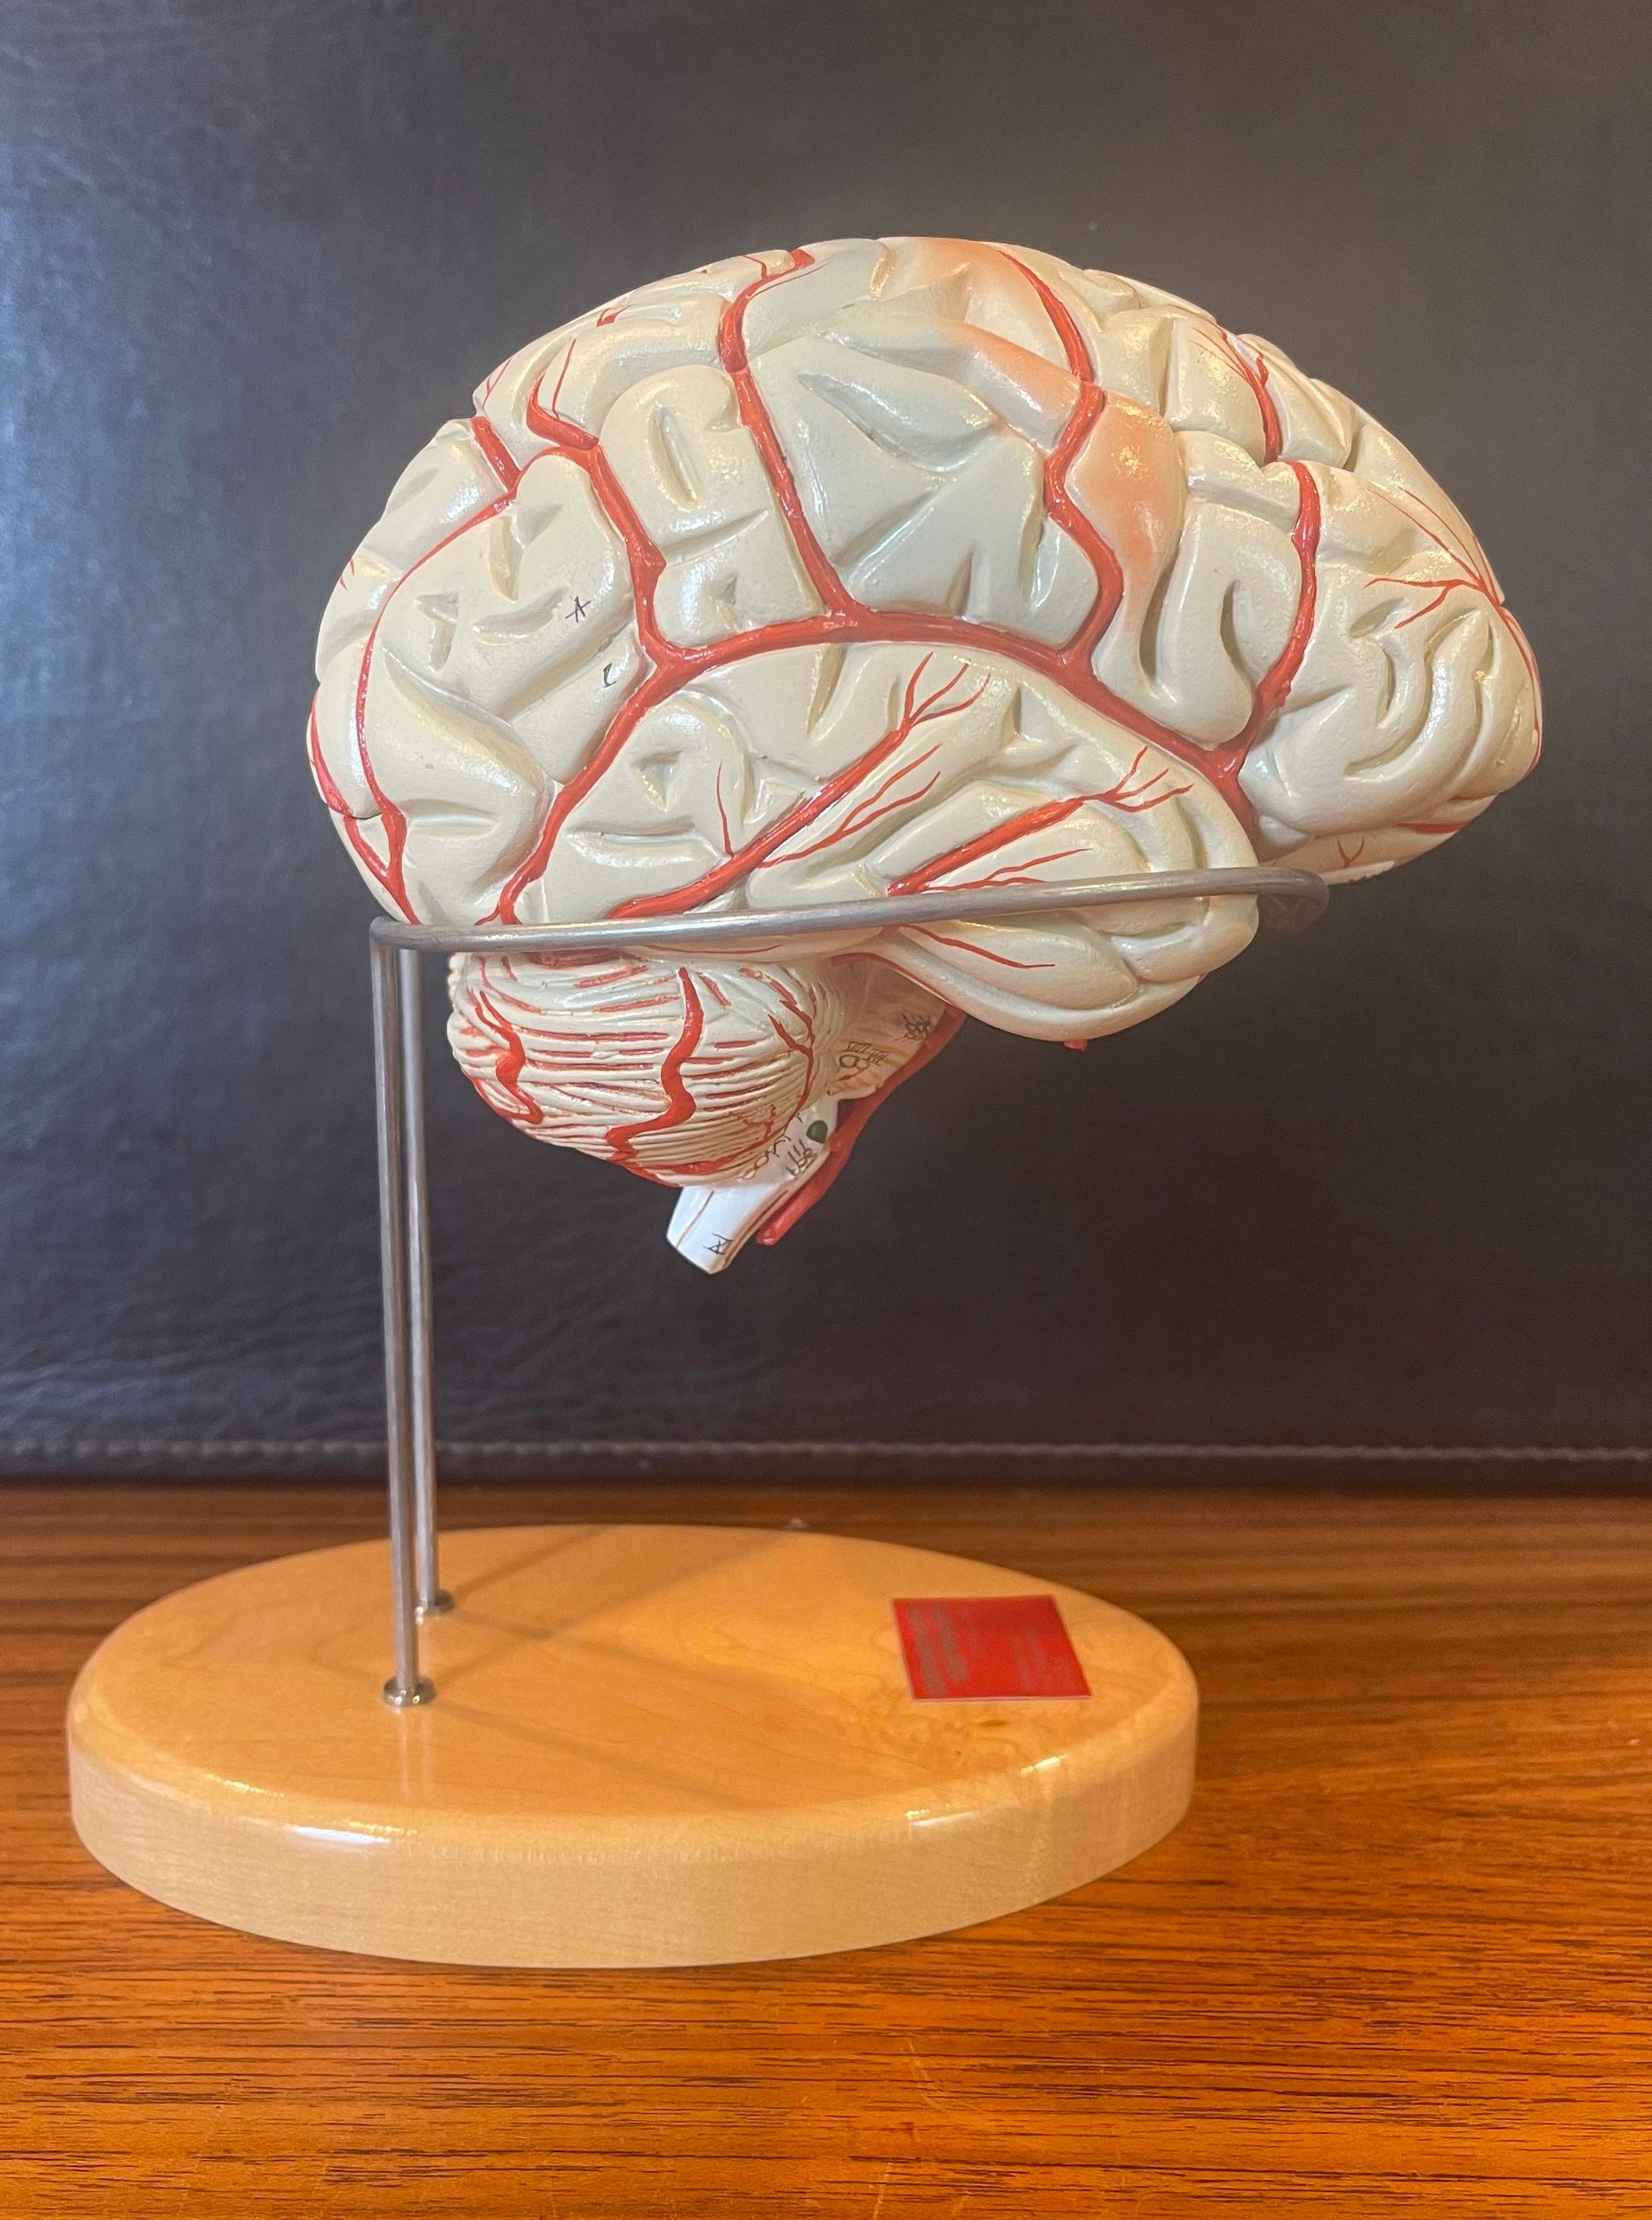 Modèle de cerveau vintage peint à la main sur pied par Denoyer-Geppert, circa 1990. Le modèle est constitué de huit pièces de vinyle moulé, incassables et reliées par des goupilles en acier ; il ne se démonte pas tant qu'on ne le tire pas. On